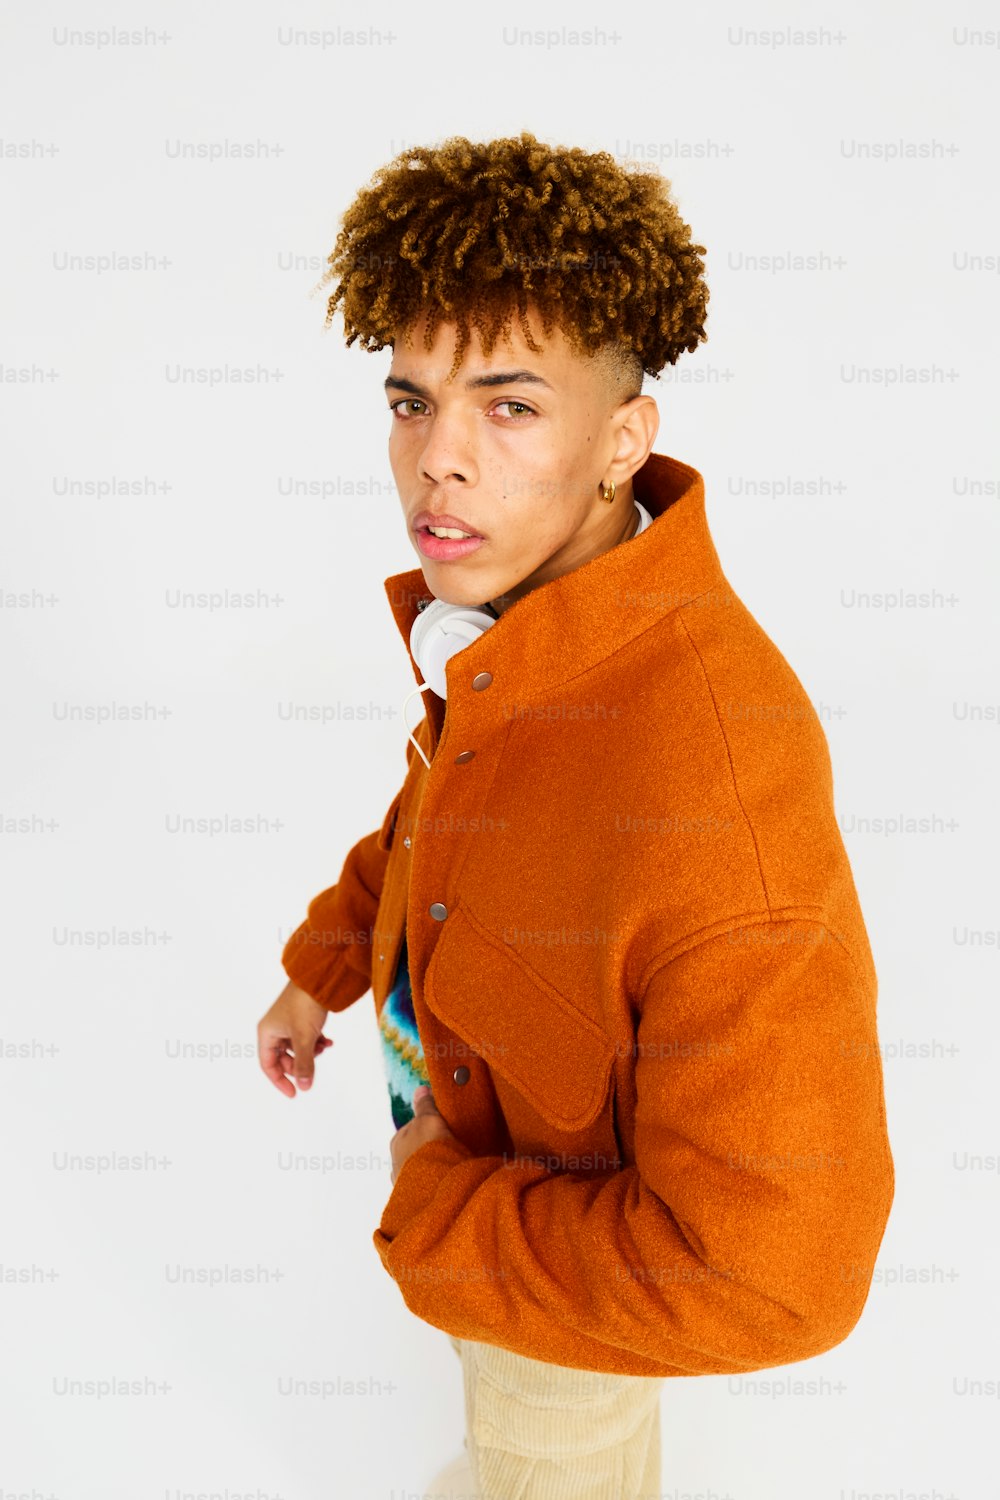 주황색 재킷을 입은 곱슬머리의 남자